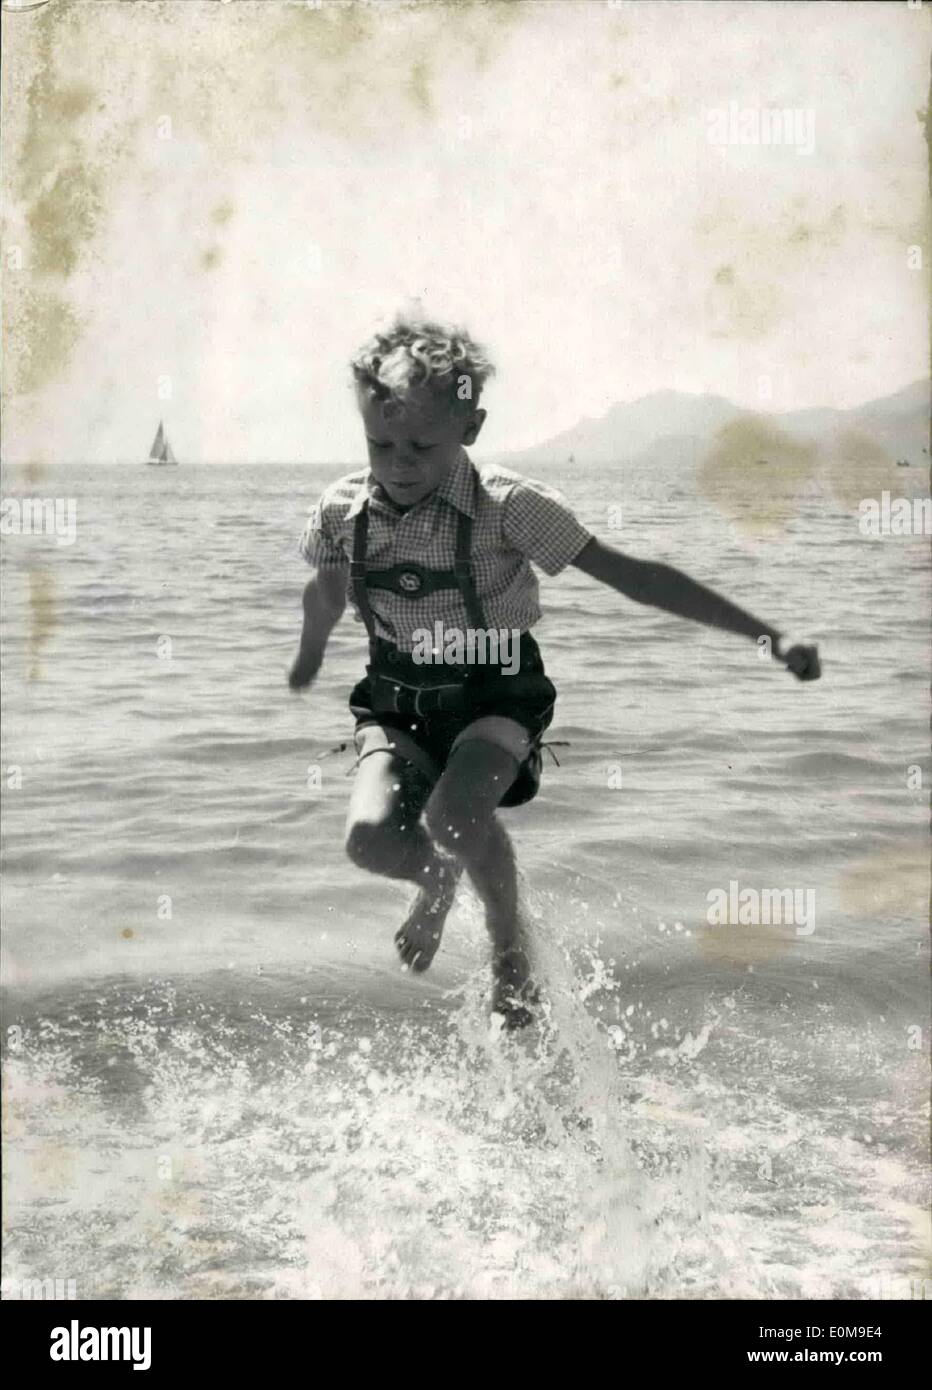 Mar 03, 1954 - ragazzo svedese star al Festival di Cannes: ragazzo svedese attore Kjel Sucksdorff giocando sulla spiaggia di sabbia di Cannes. Egli Foto Stock